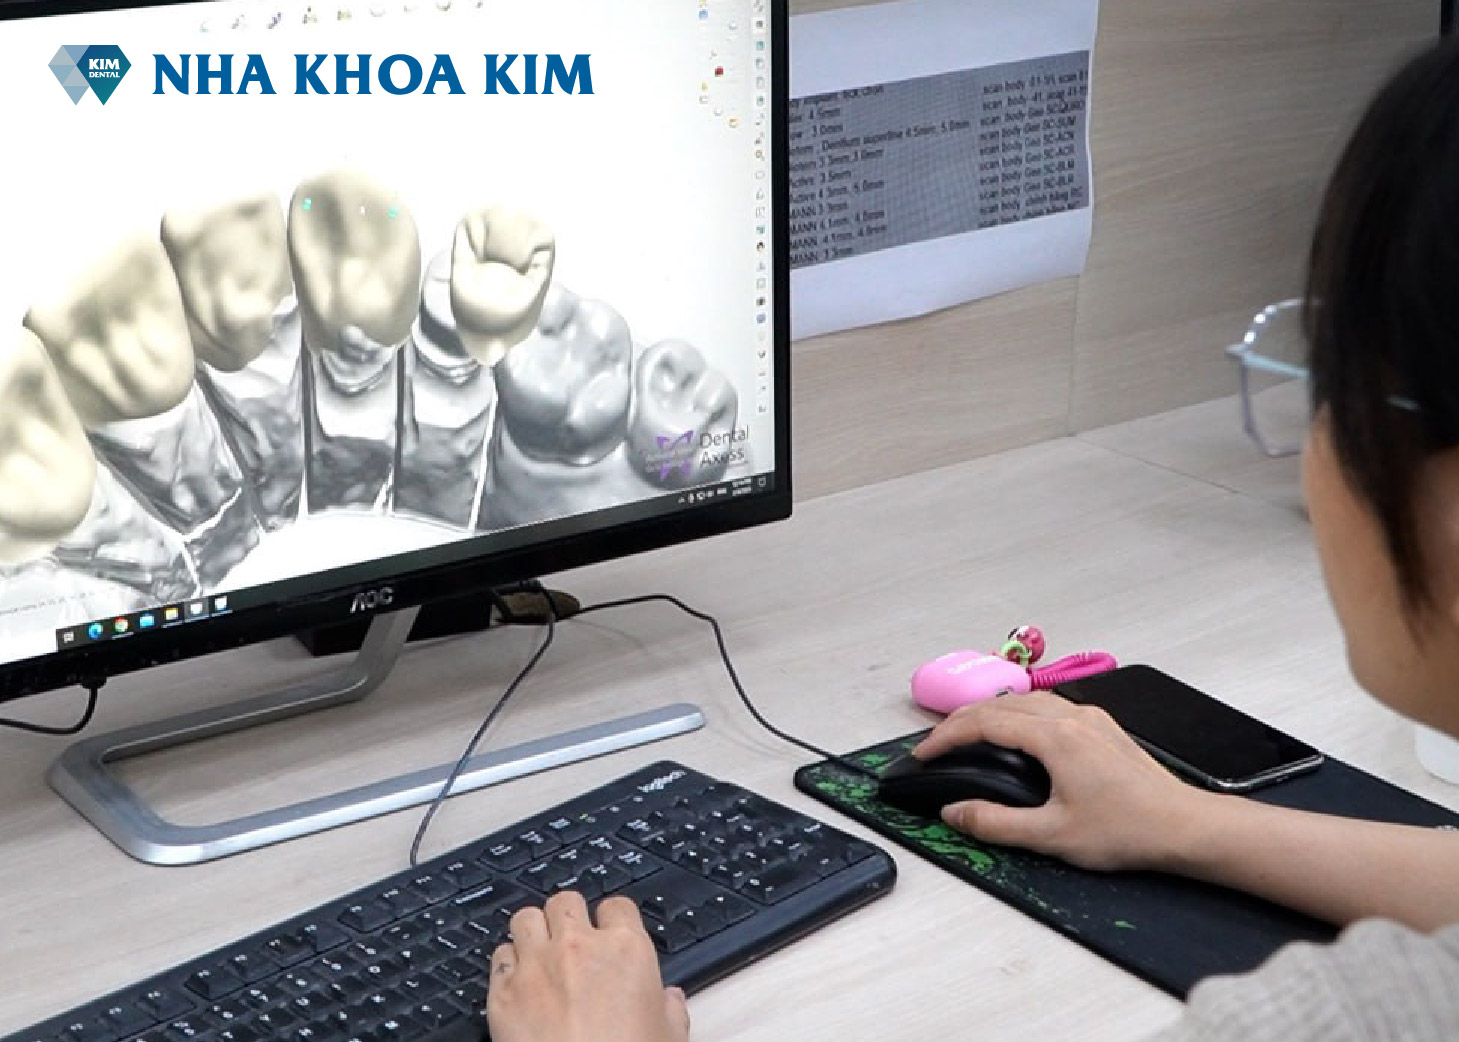 Kỹ thuật viên tiến hành thiết kế, tạo hình răng sứ 3D từ dữ liệu scan trong miệng 